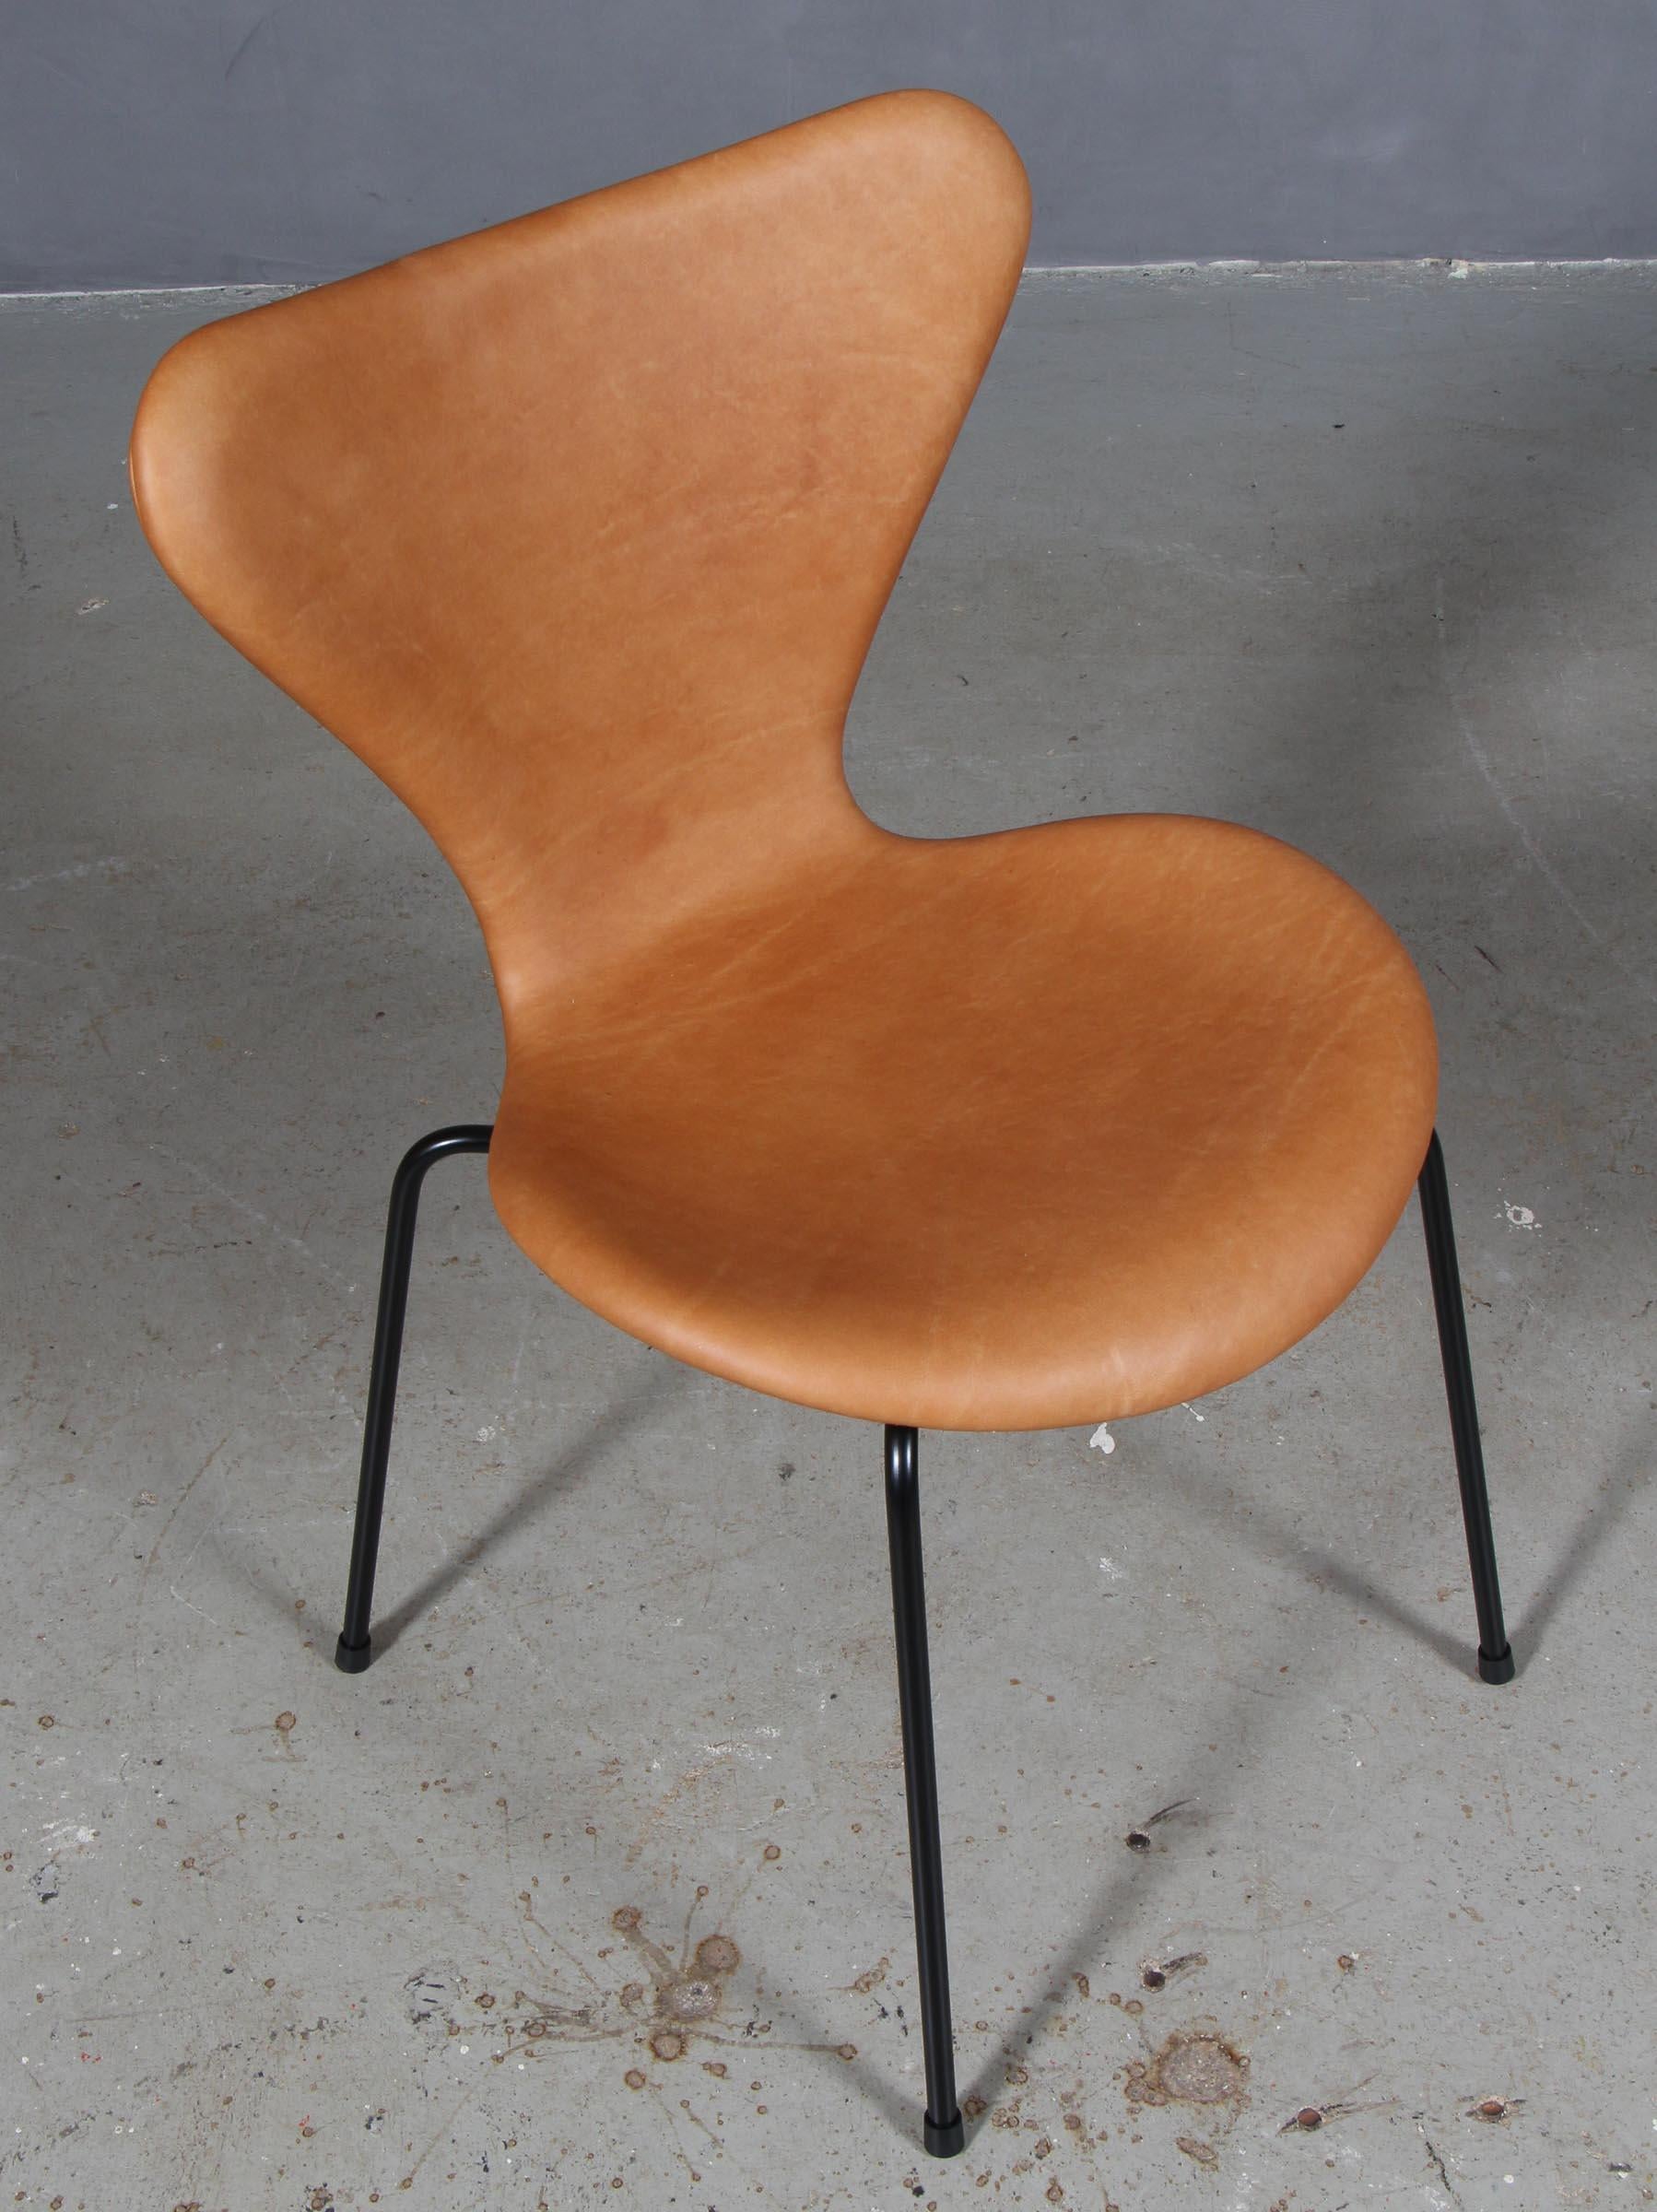 Chaise de salle à manger Arne Jacobsen nouvellement tapissée de cuir aniline vintage cognac.

Base en tube d'acier revêtu de poudre.

Modèle 3107 Syveren, fabriqué par Fritz Hansen.